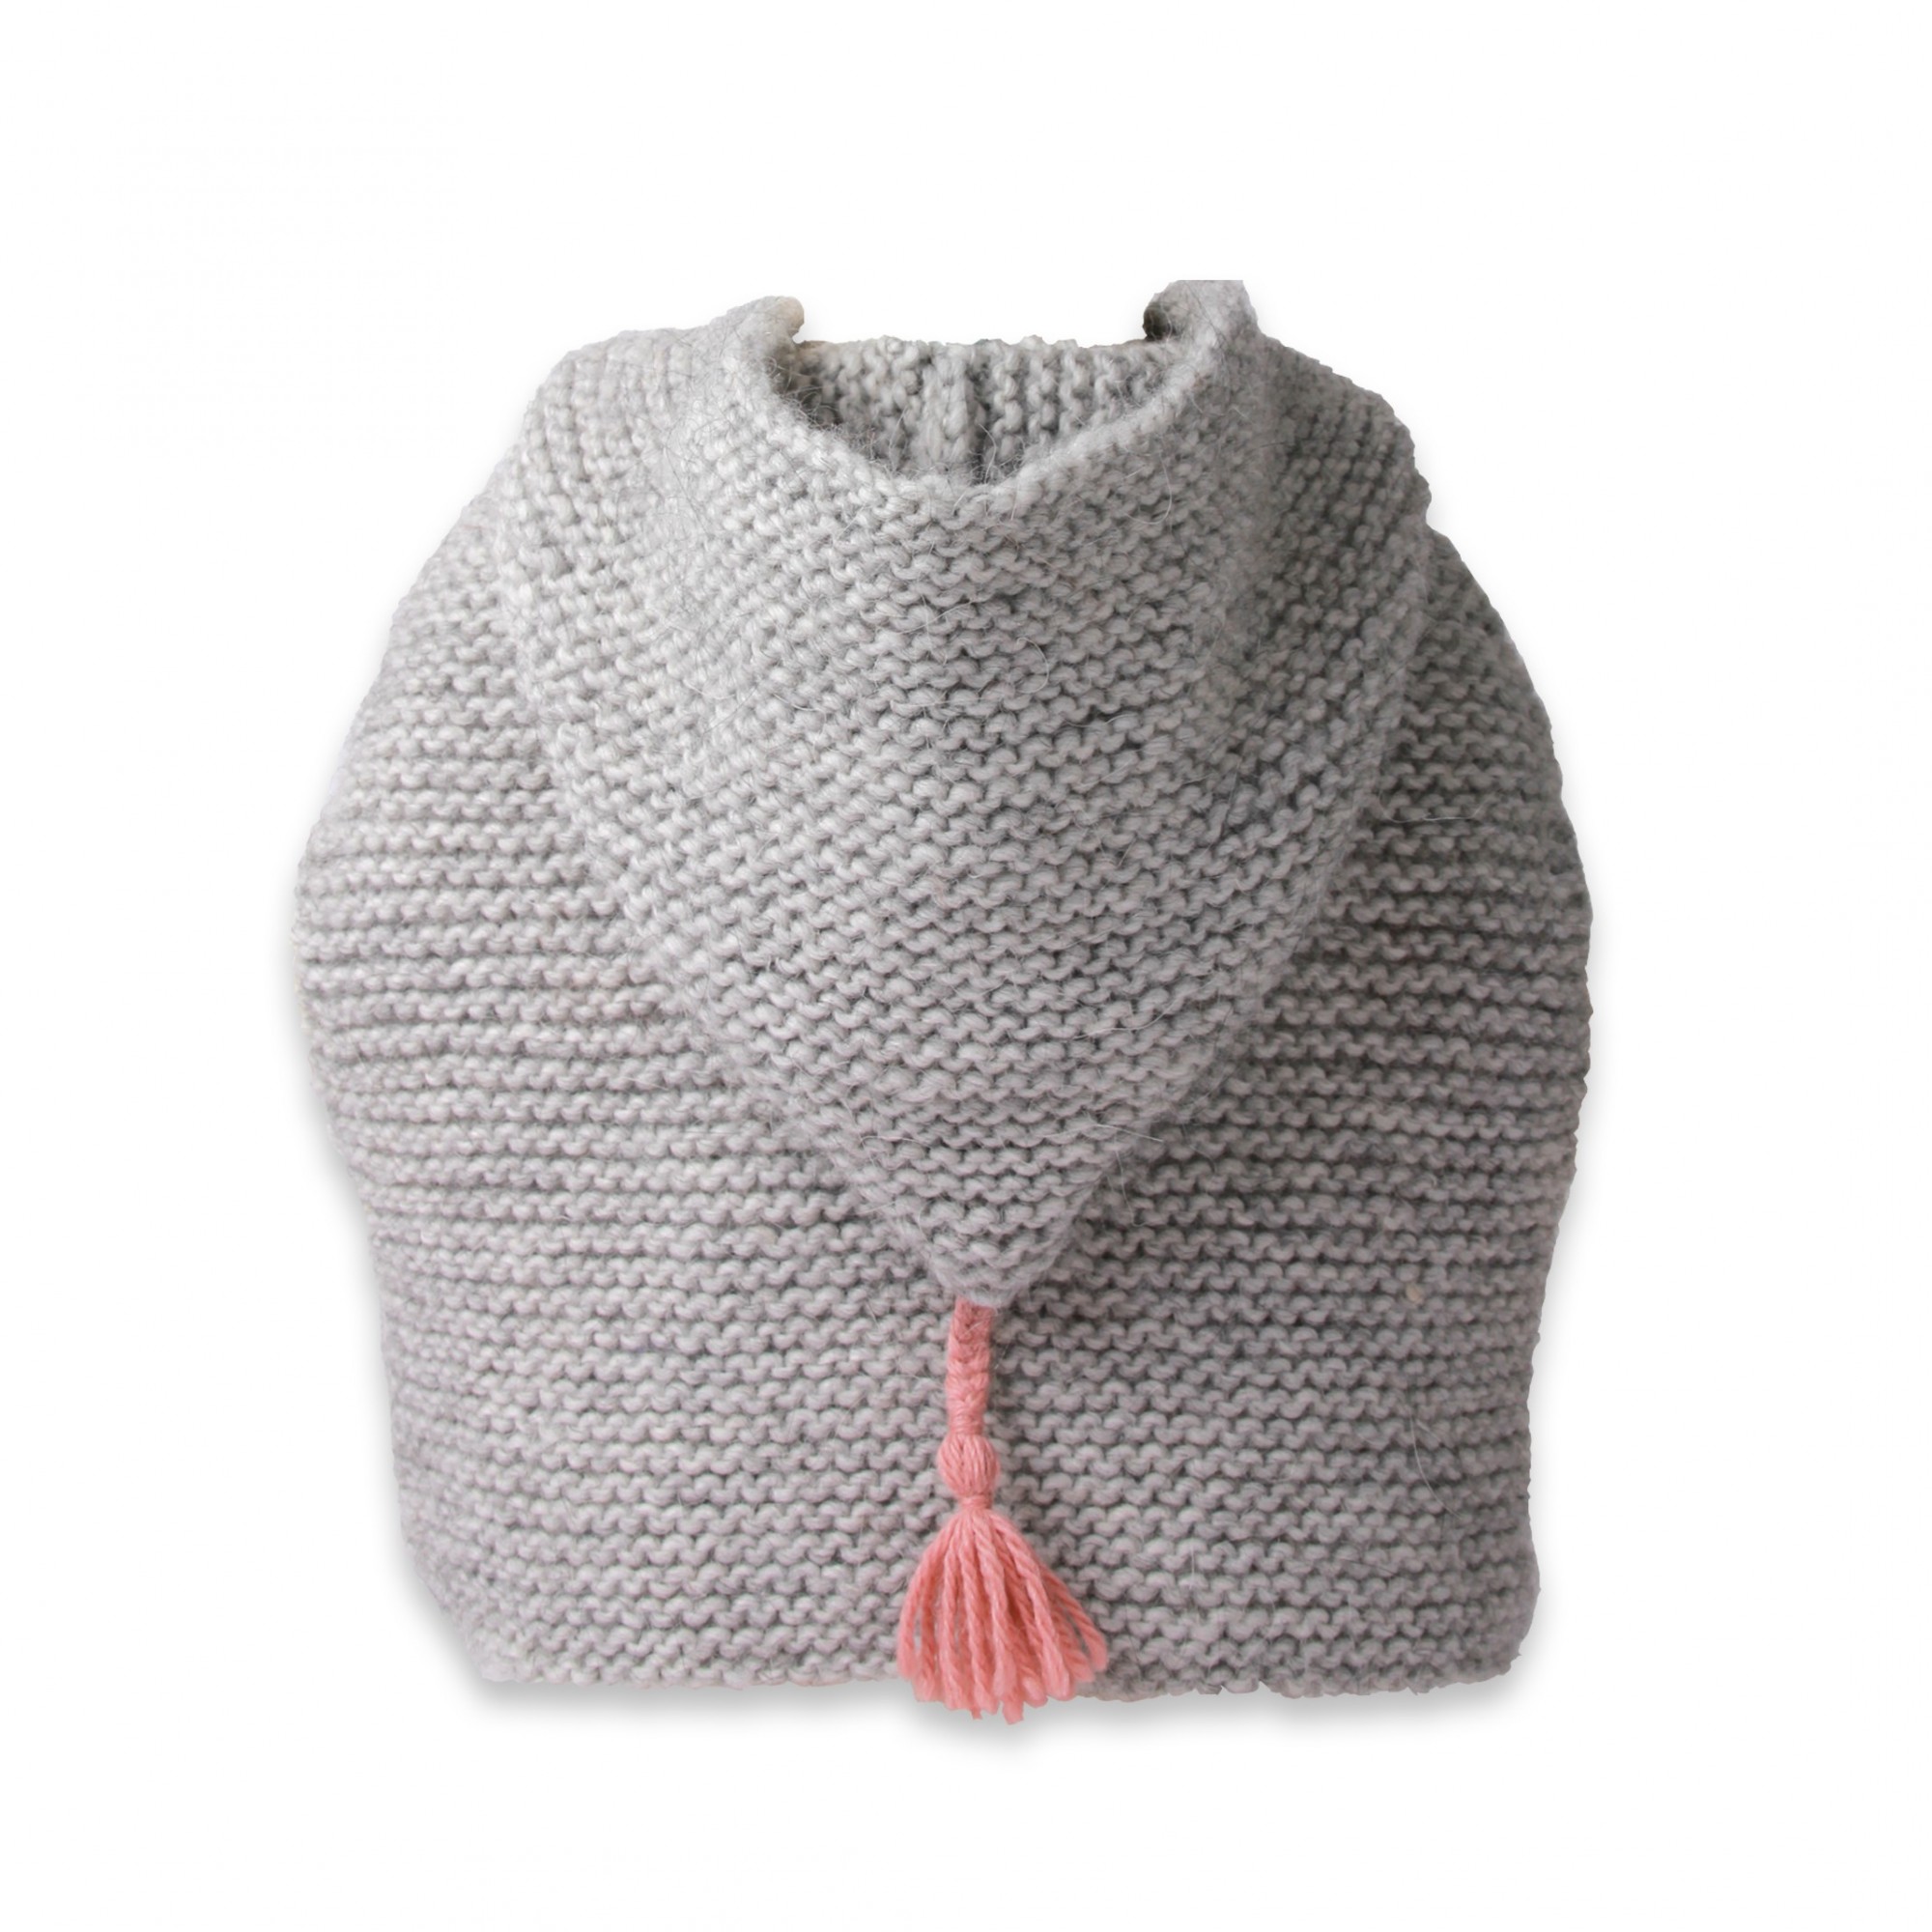 tricoter une cape pour bebe